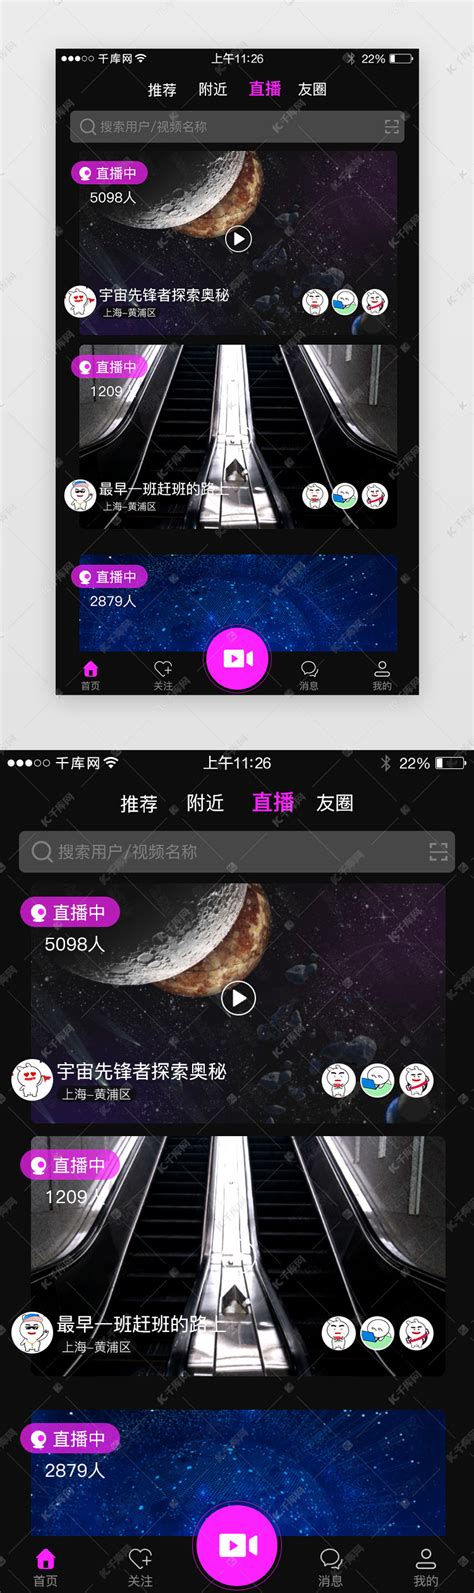 4款视频app交互设计浅析（上）-上海艾艺